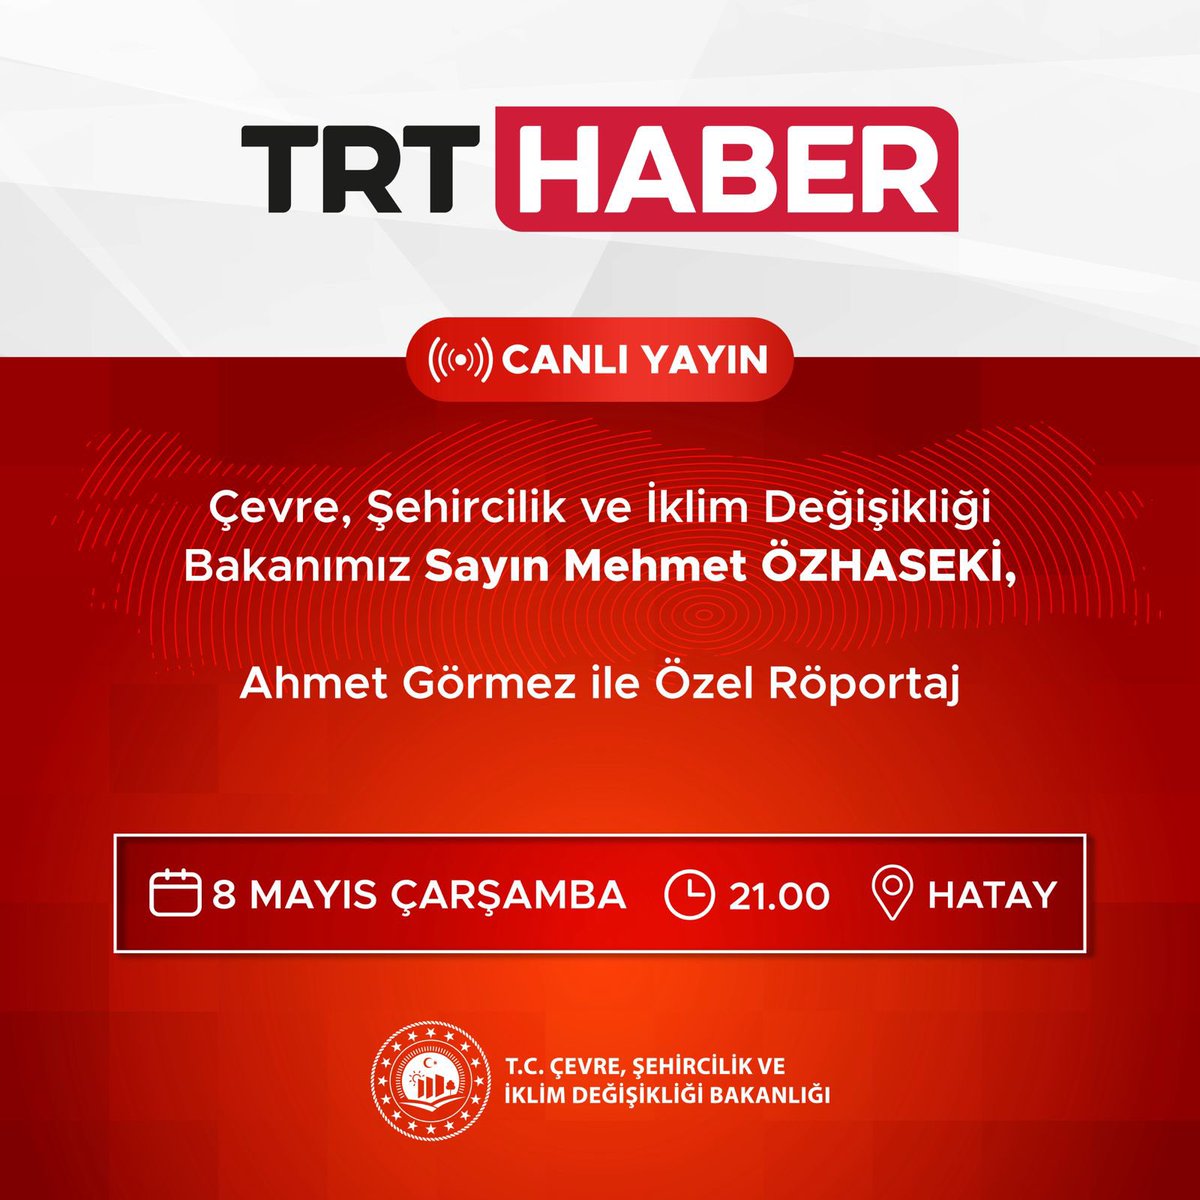 Bakanımız Sayın Mehmet Özhaseki, bu akşam Hatay’da saat 21.00’de TRT Haber ekranlarında, “Ahmet Görmez ile Özel Röportaj” programında deprem bölgesinde yürütülen inşa ve ihya çalışmalarına ilişkin soruları yanıtlayacak.